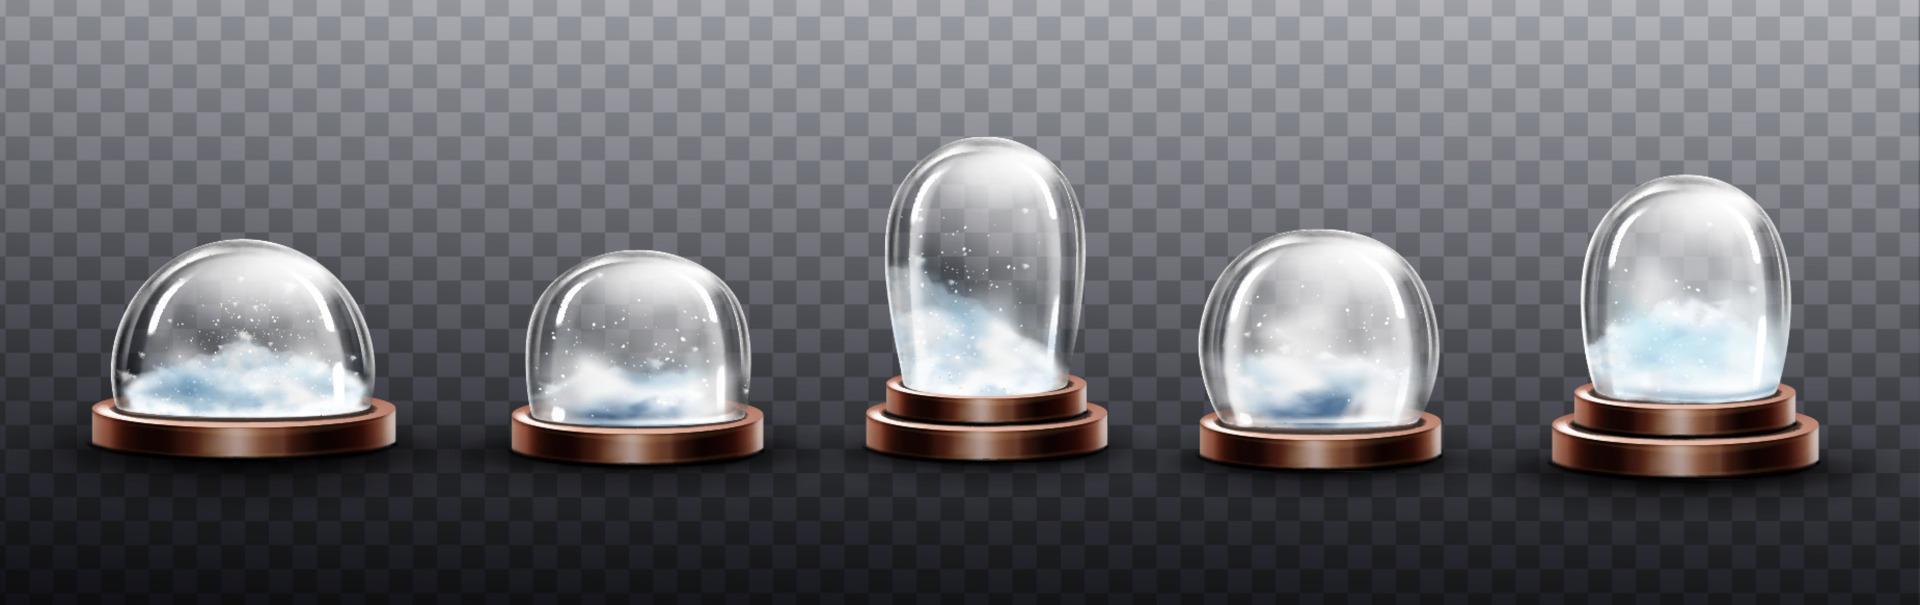 realistisk glas kupoler med snö, jul kloten vektor